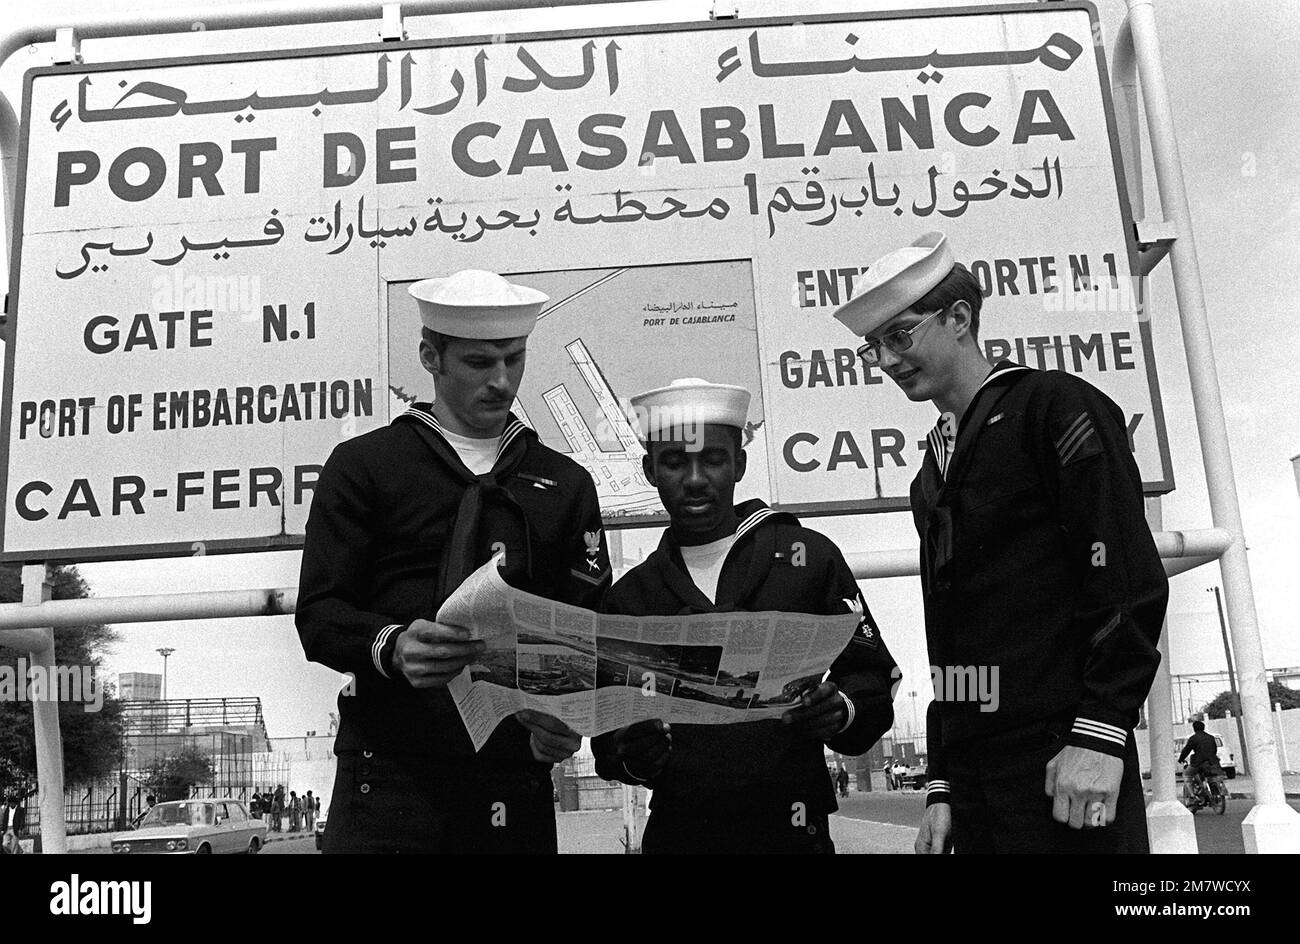 Von links nach rechts studieren Kommunikationstechniker 3. Klasse John A. Swessel, Quartermaster 3. Klasse Jeffery A. Jackson und Feuerwehrmann Don Bailey während ihres Hafenbesuchs eine Karte. Basis: Casablanca Land: Marokko (MÄRZ) Stockfoto